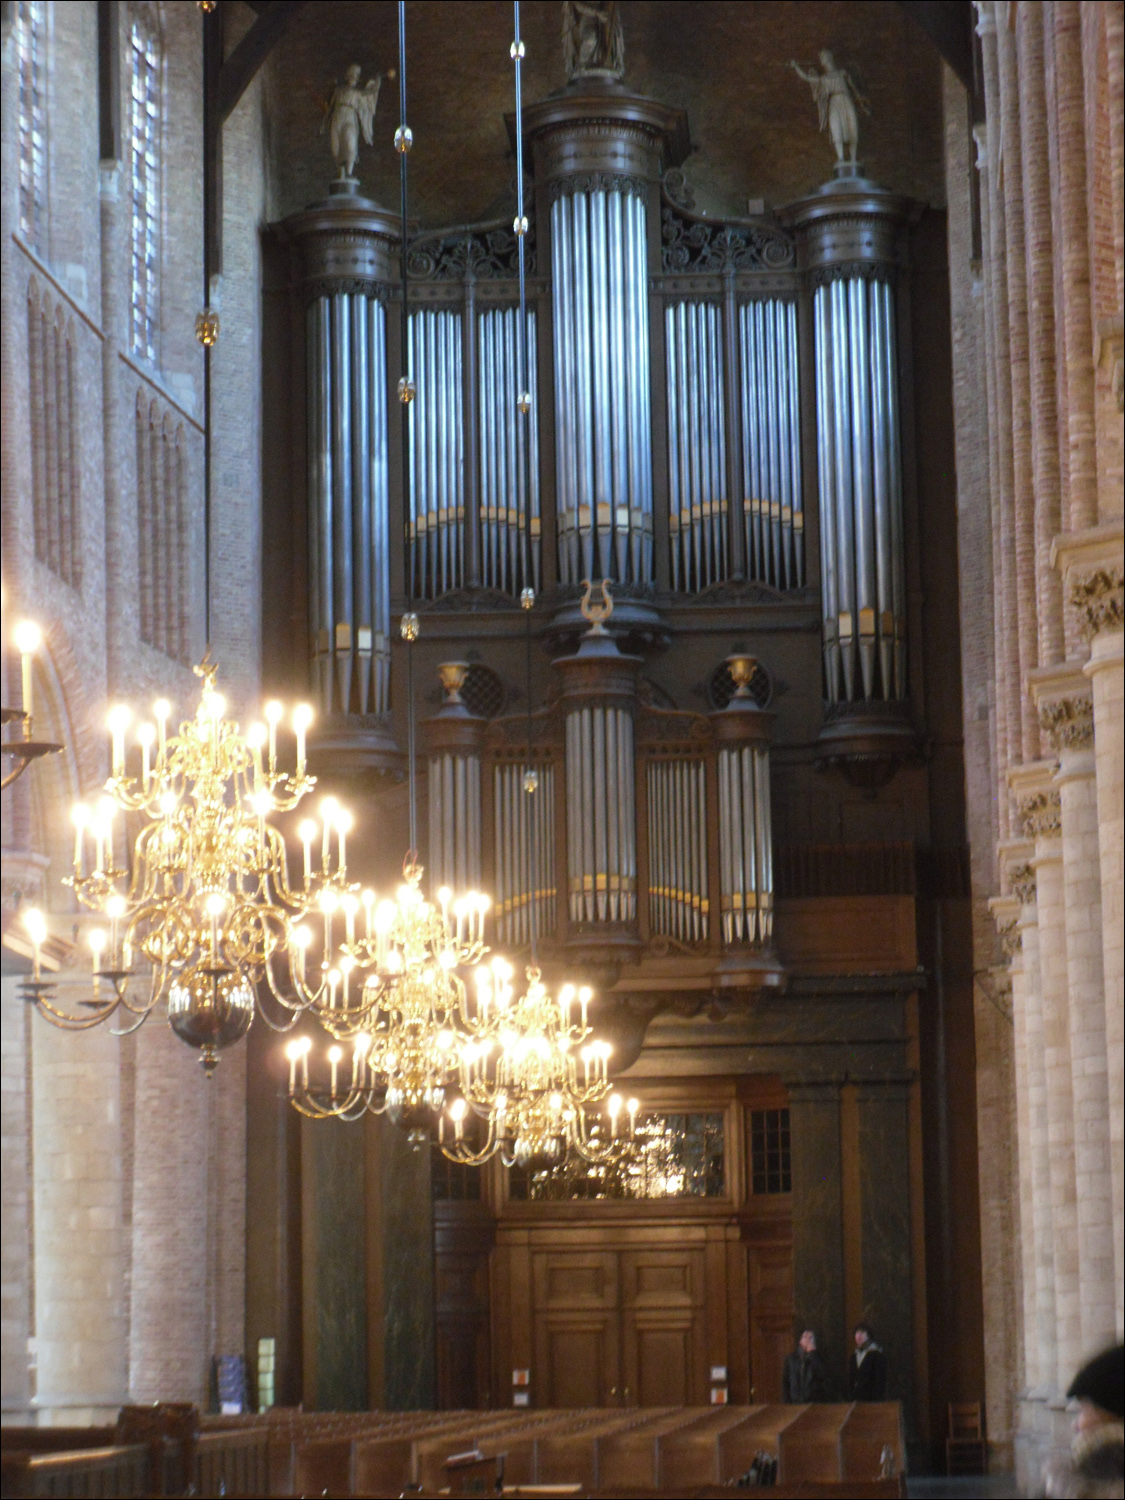 Pipe organ in Nieuwe Kerk.